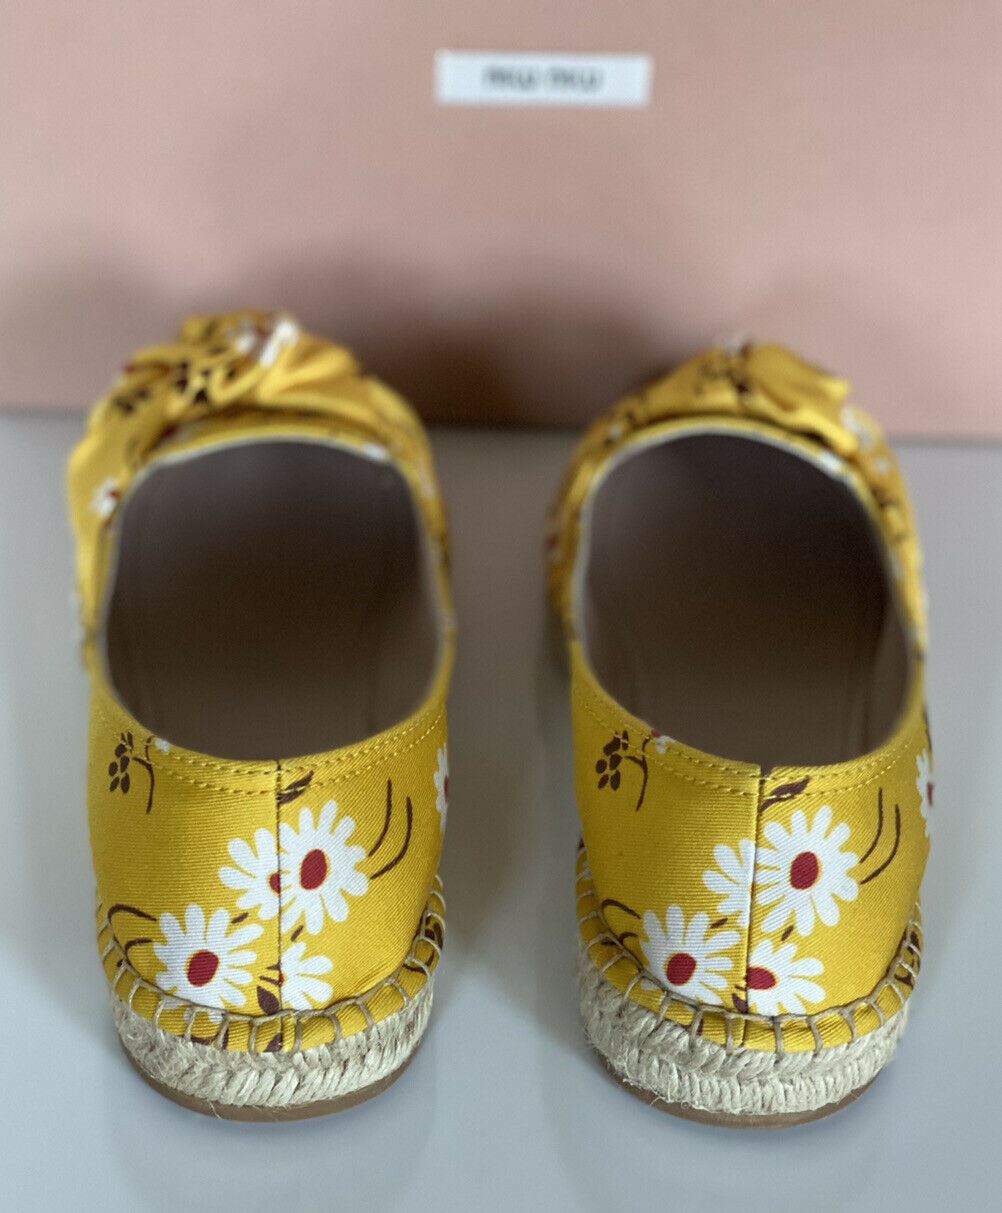 NIB MIU MIU Damen-Espadrille-Sandale mit gelben Blumen, 9 US 5S037D, hergestellt in Italien 